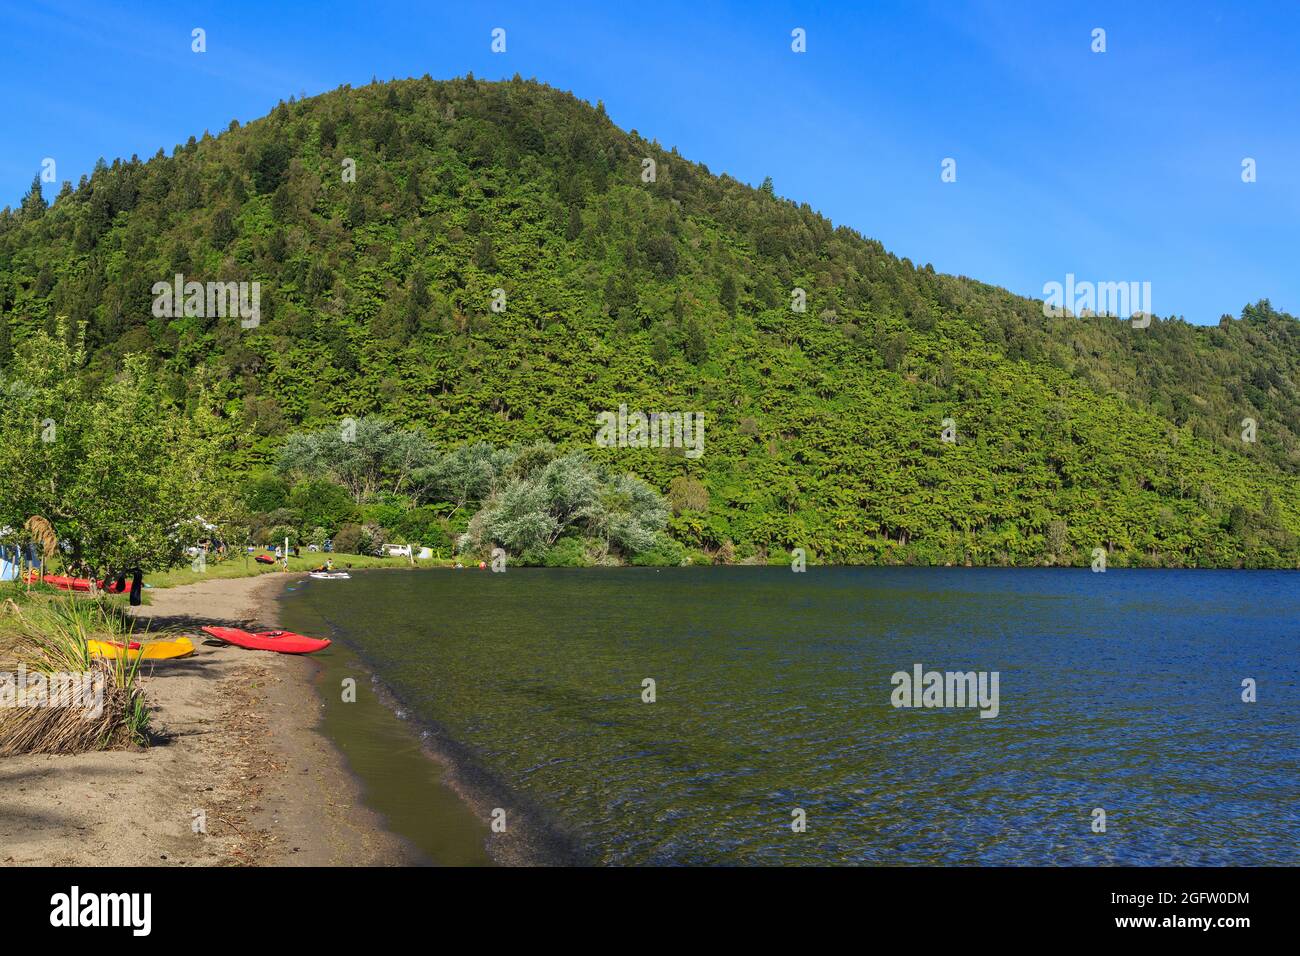 Lac Okareka dans le district des lacs de Rotorua, Nouvelle-Zélande. Les kayaks reposent sur le rivage au camping du ministère de la conservation Banque D'Images